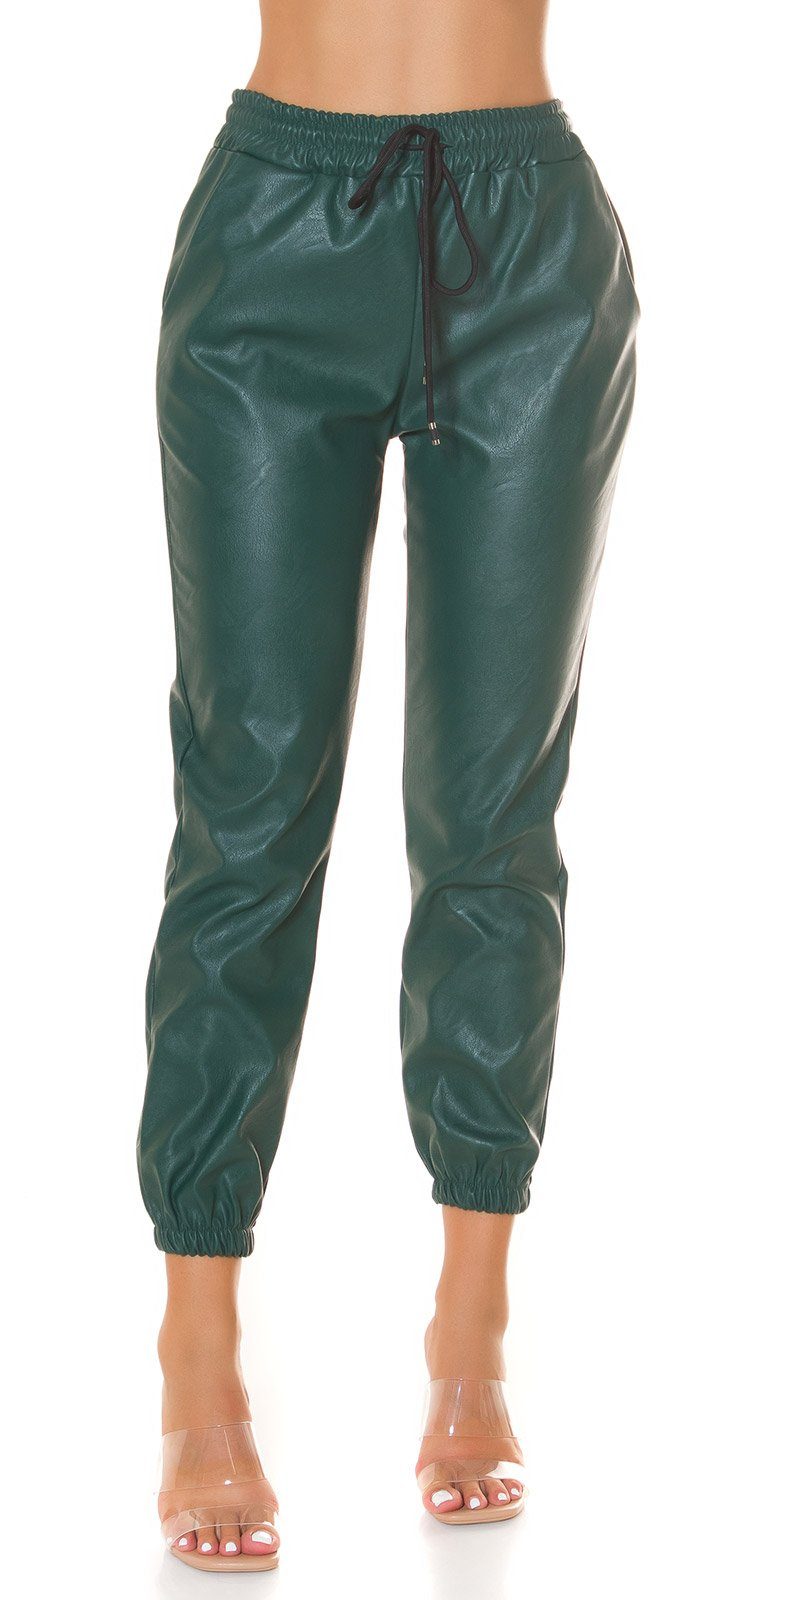 Koucla Jogger Pants Trendy Highwaist Lederlook grün Hose "Jogger"